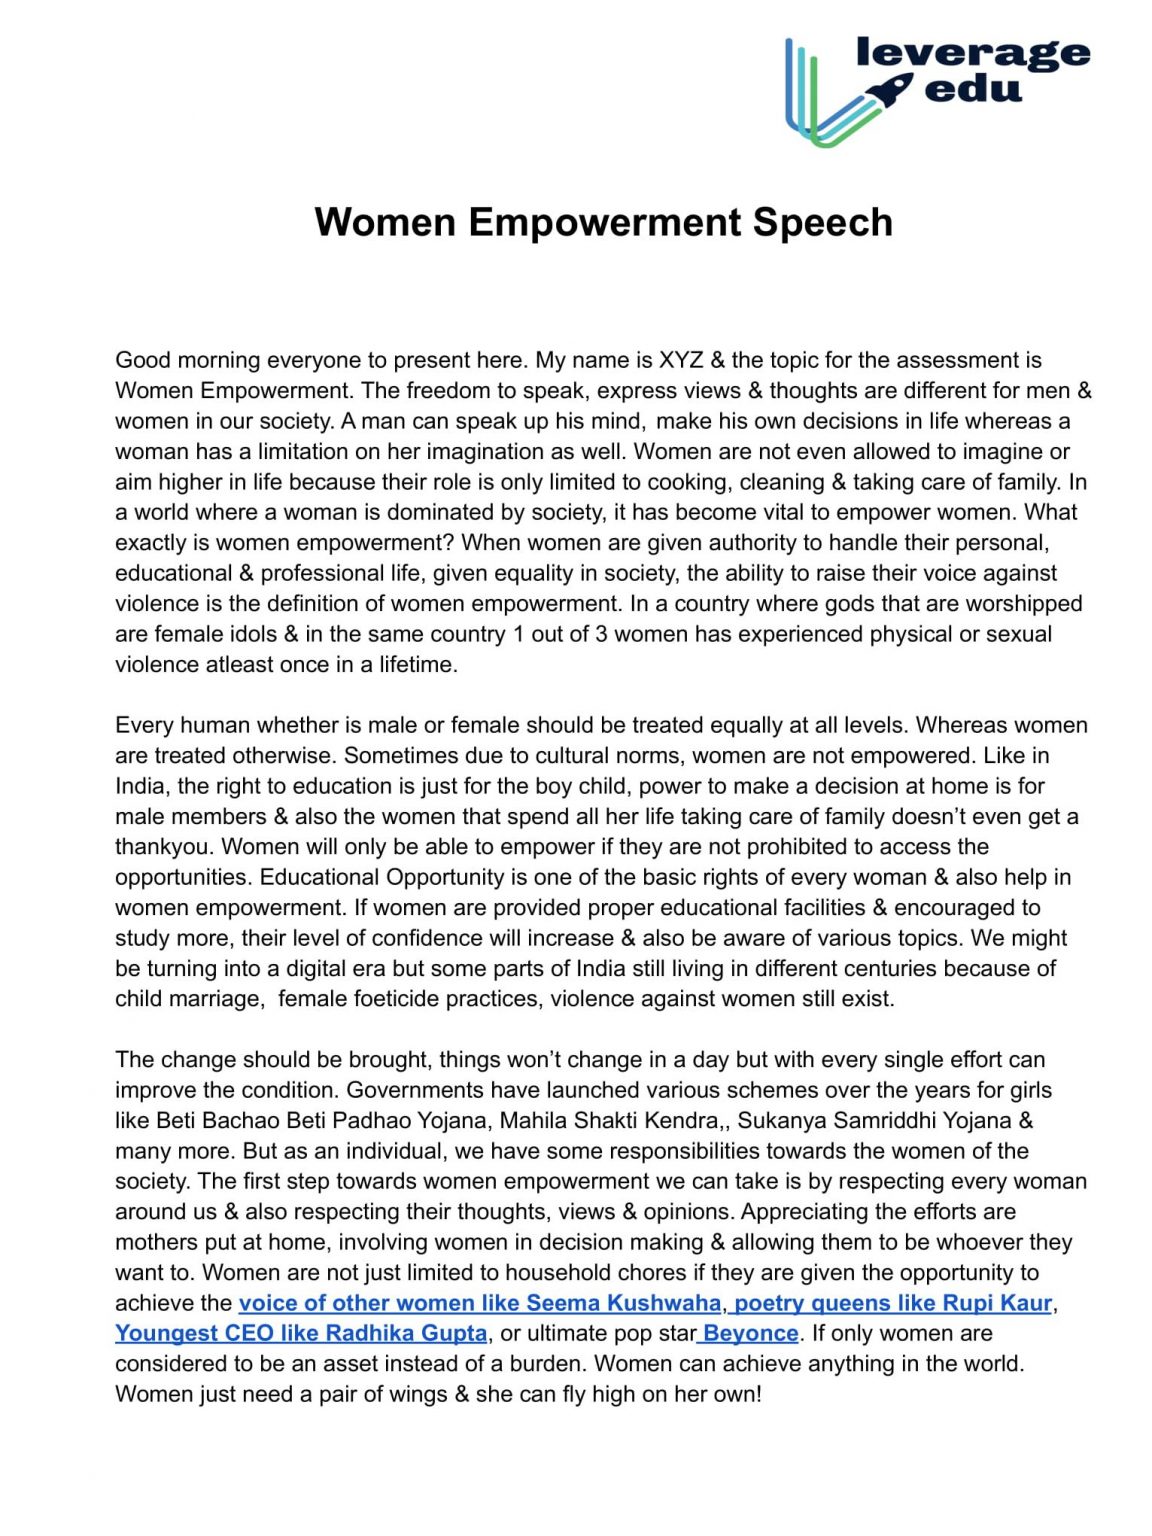 speech on women's empowerment in 200 words pdf